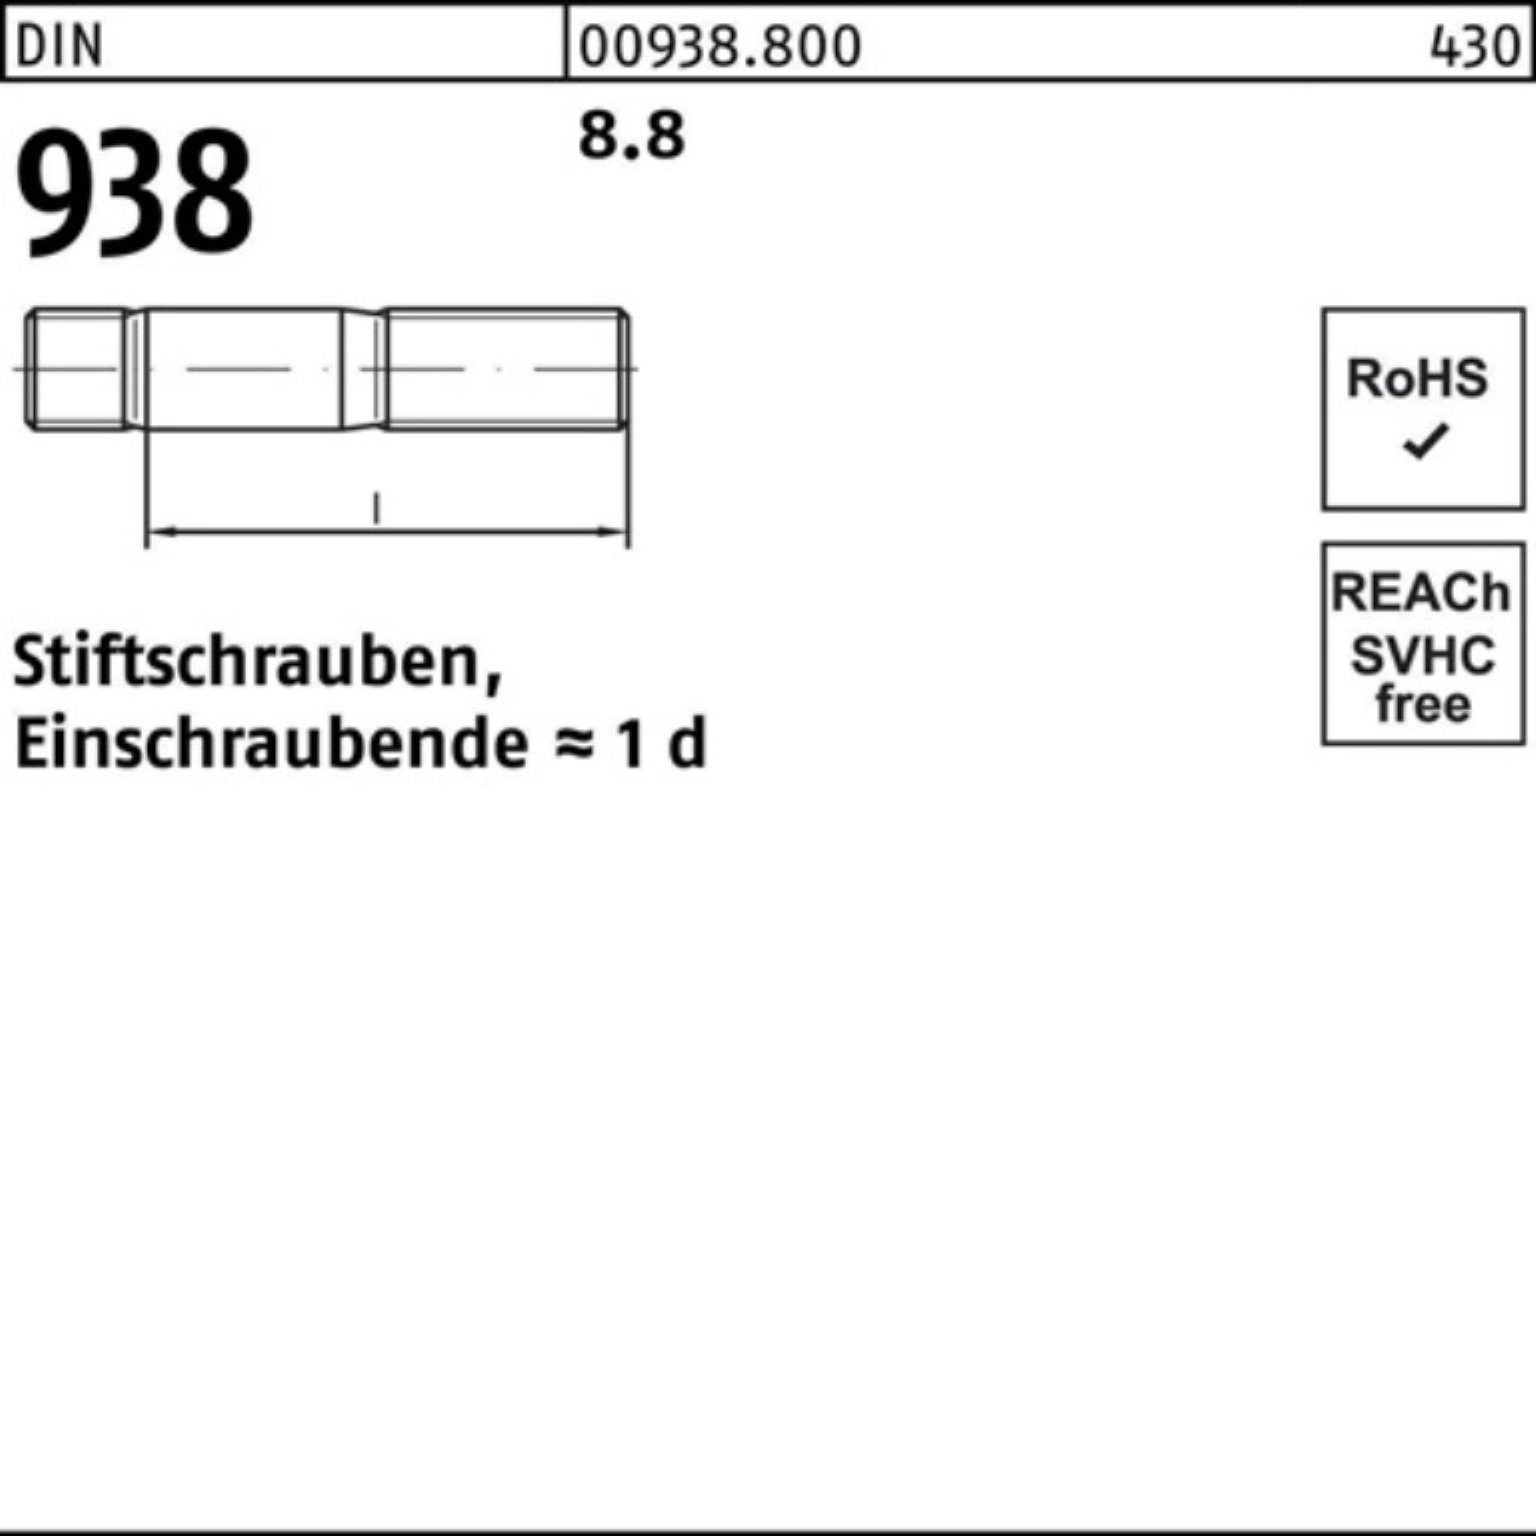 Reyher Stiftschraube 100er DIN Sti 8.8 DIN Stück Stiftschraube 8.8 938 130 938 M24x Pack 1